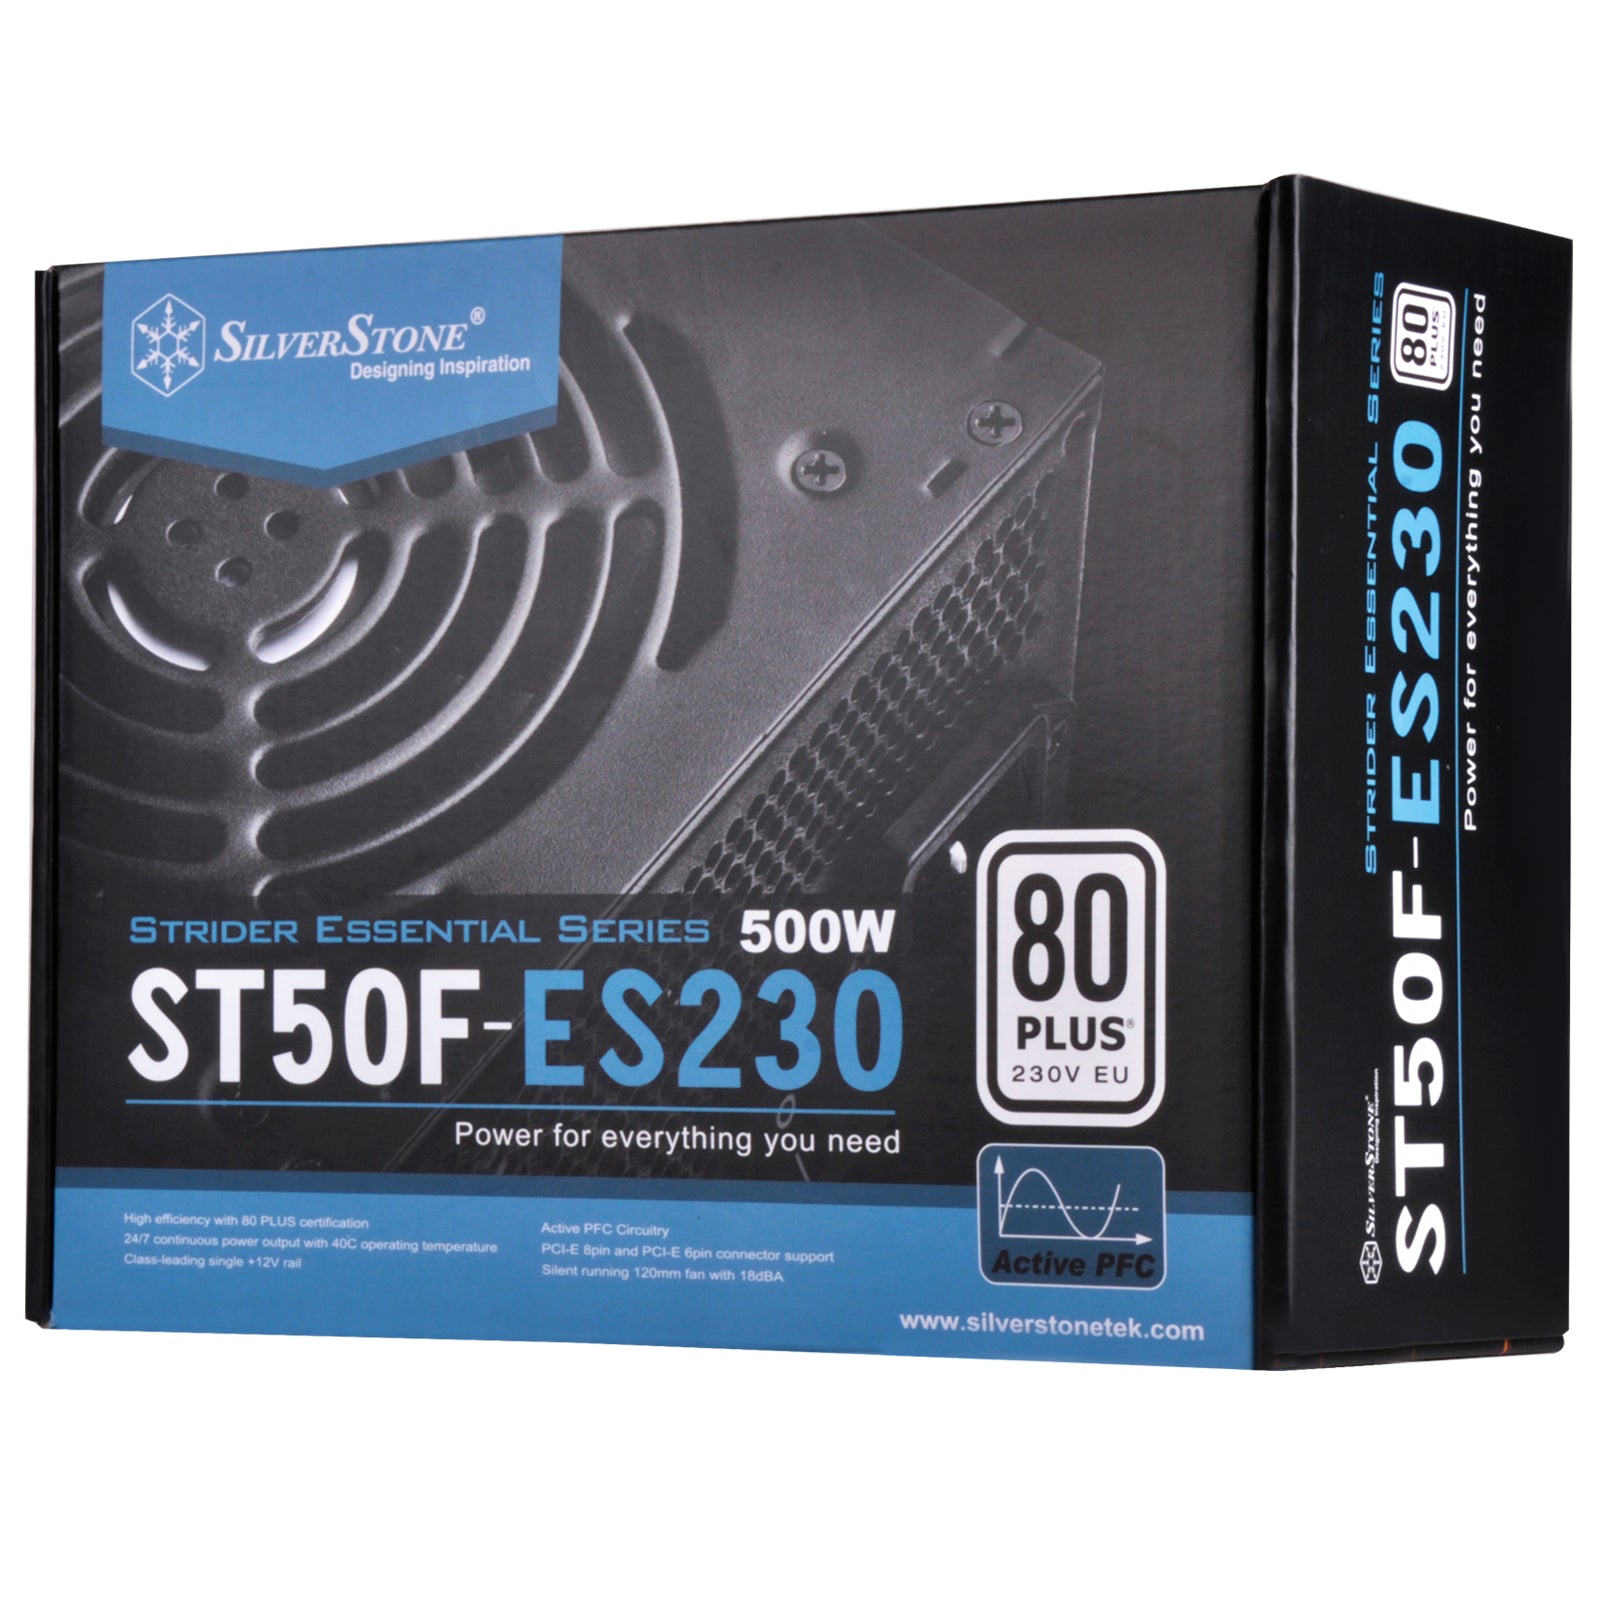 SilverStone ST50F-ES230 Power Supply